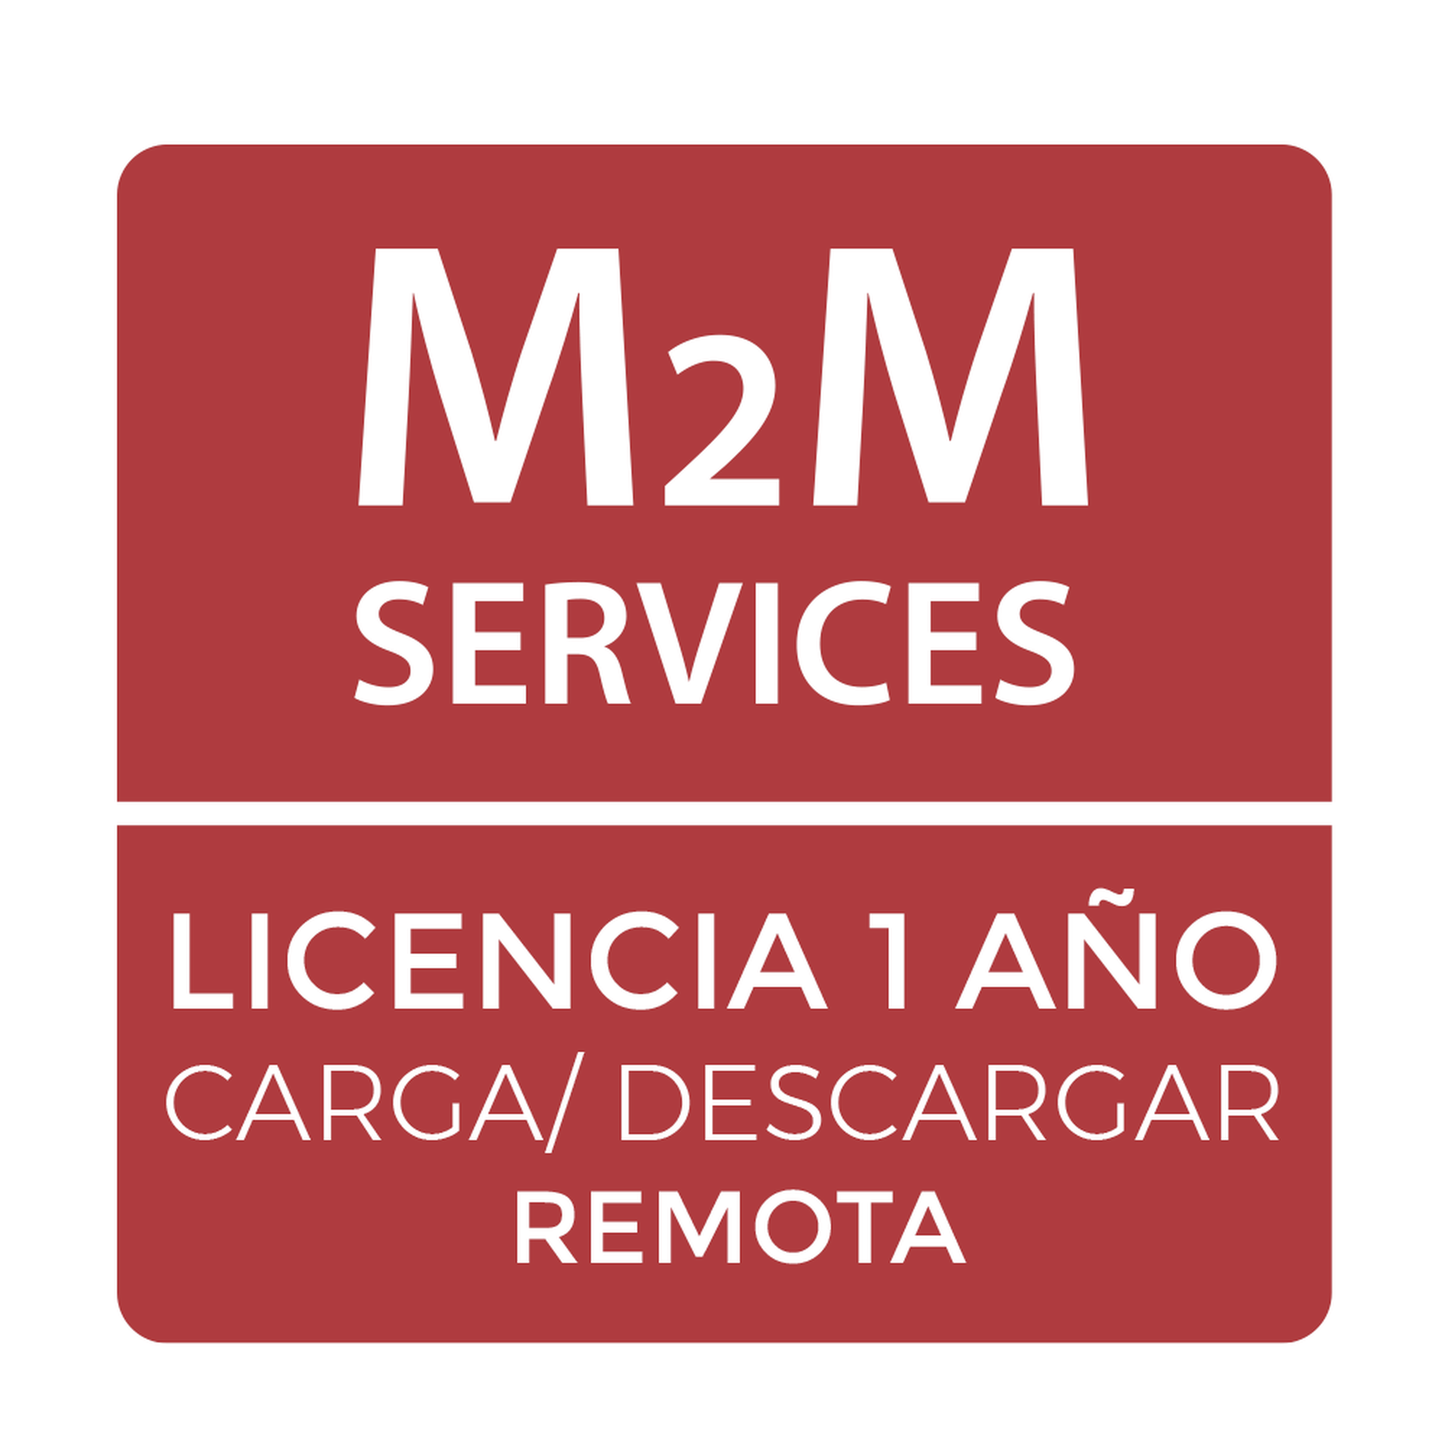 Servicio Anual M2M para software puente para conexiones ilimitadas de carga y descarga al panel de alarma